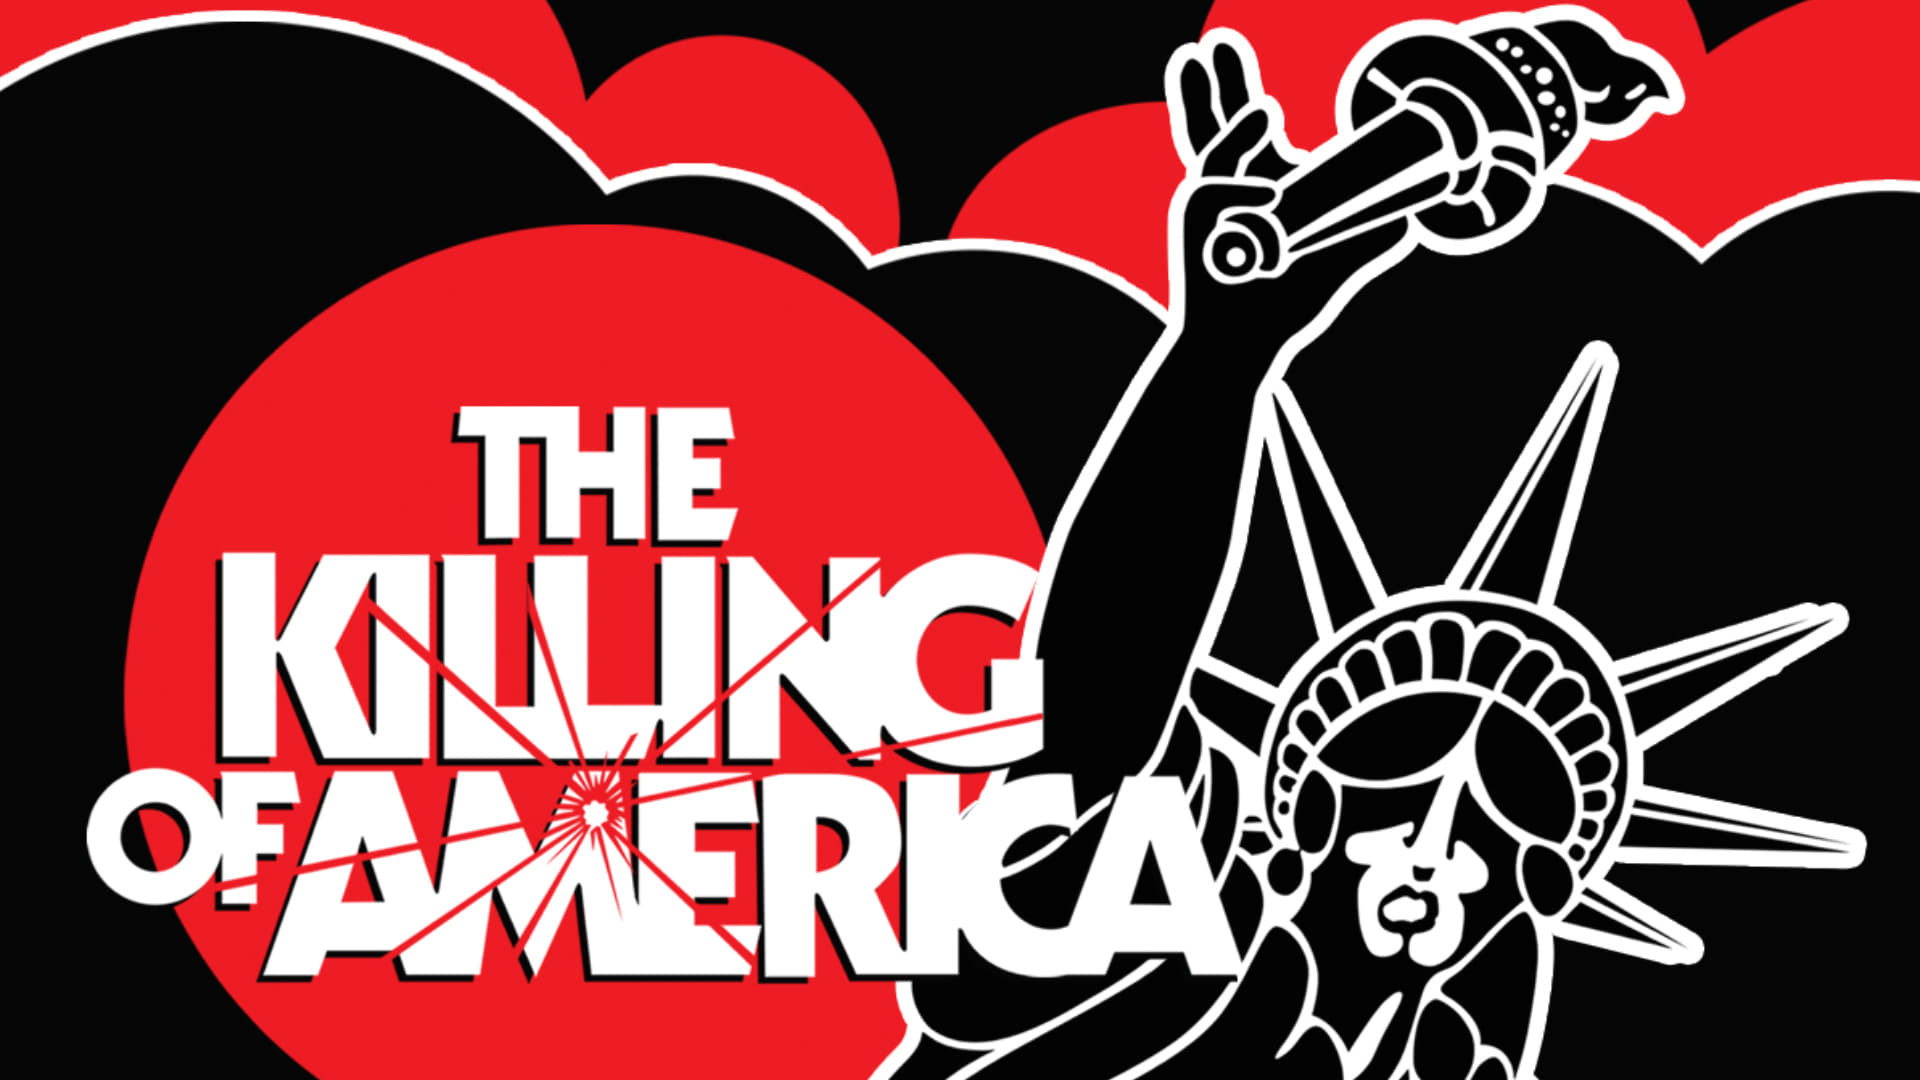 ამერიკის სიკვდილი / The Killing of America